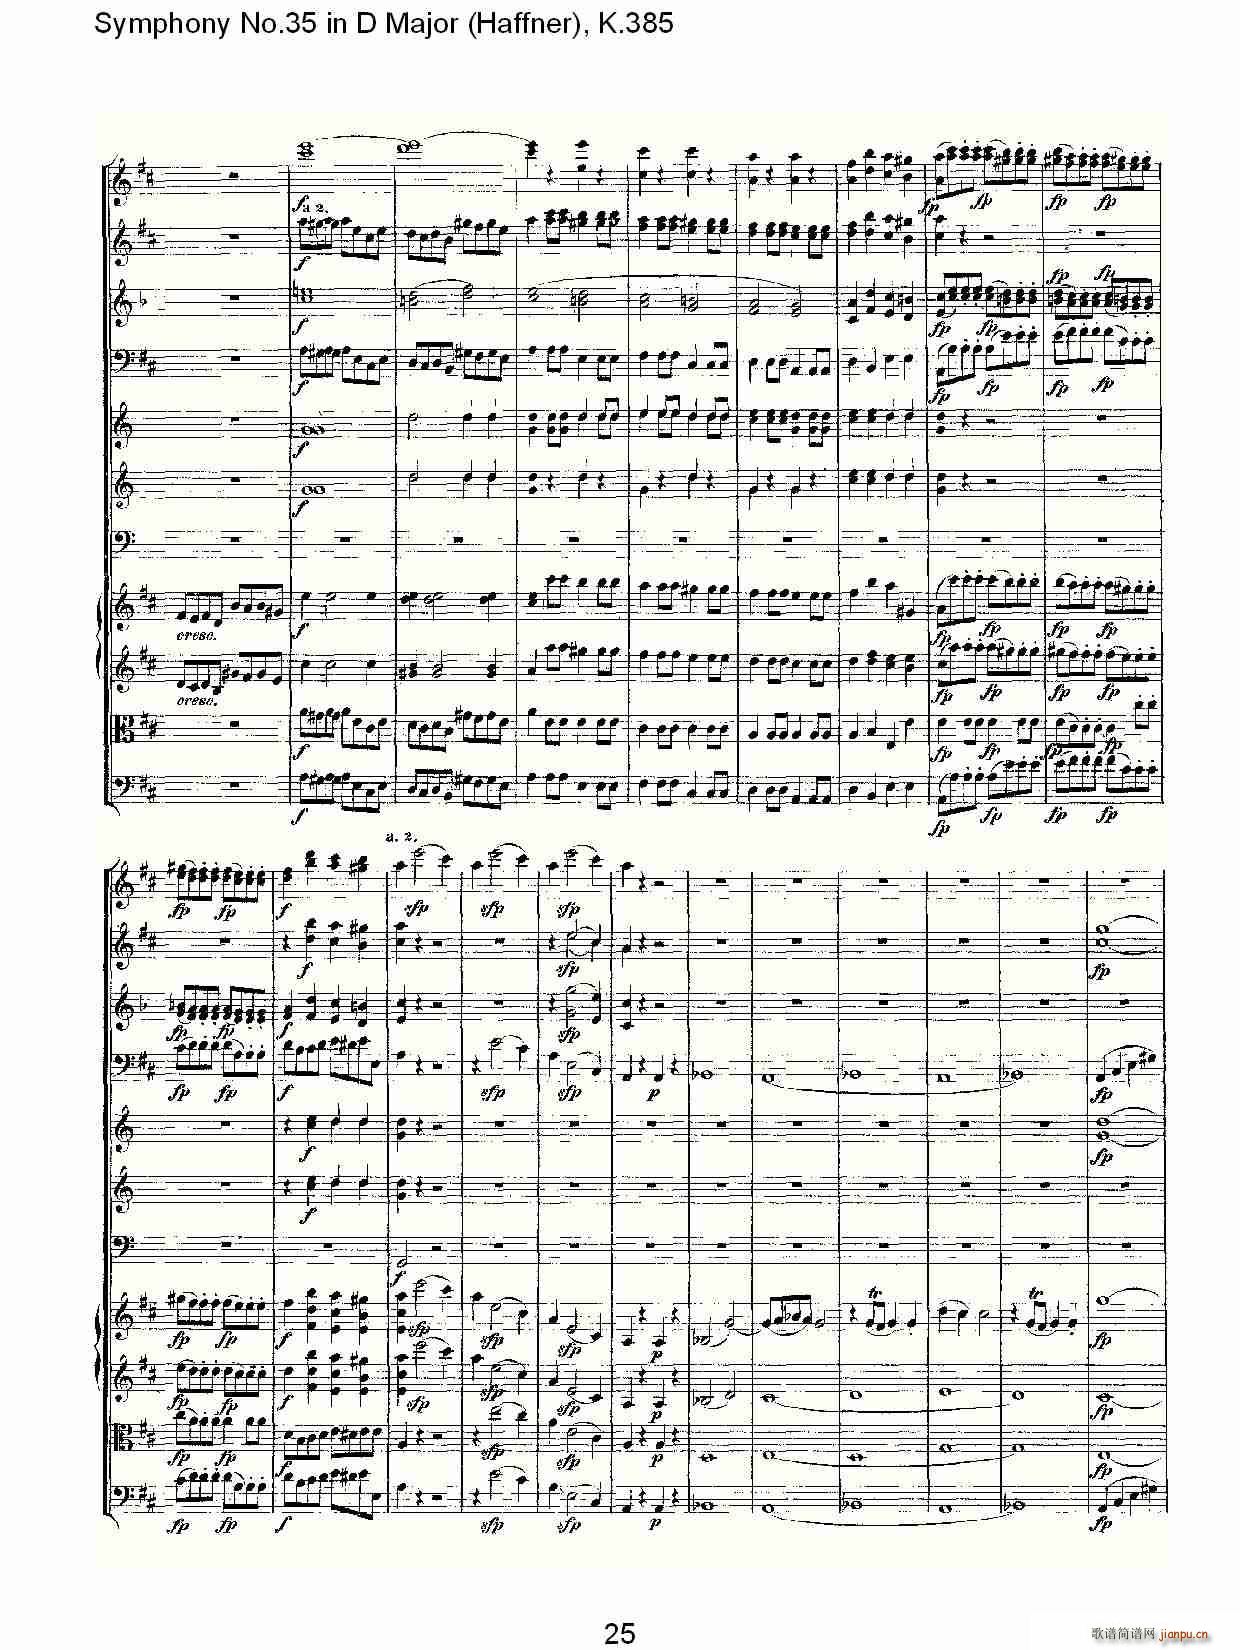 Symphony No.35 in D Major, K.385(ʮּ)25